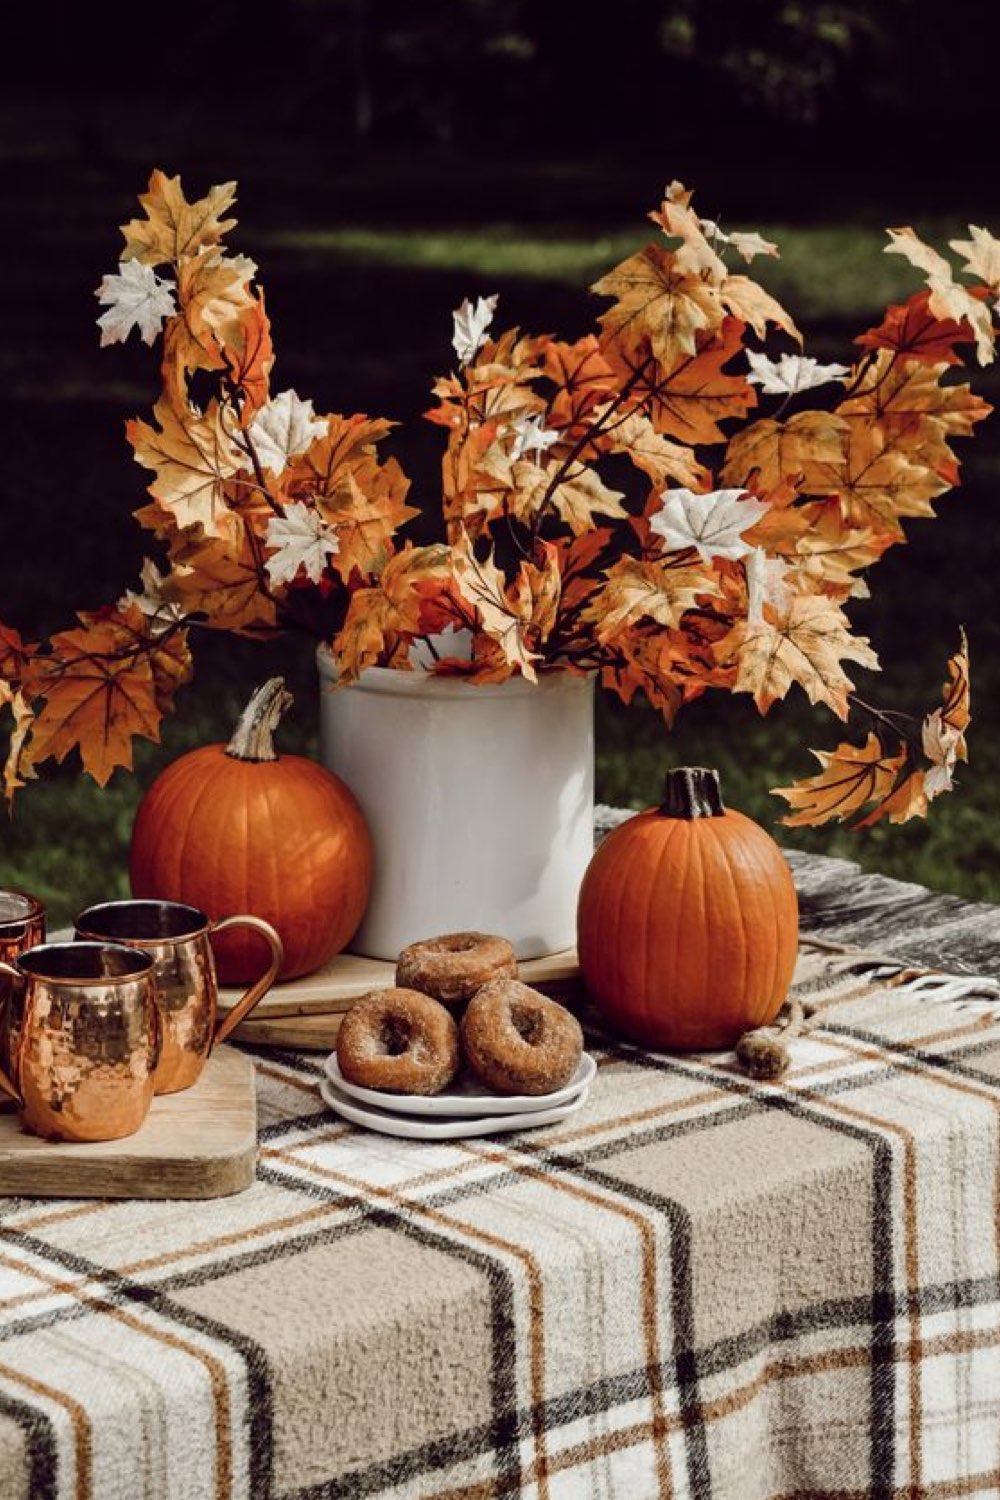 decoration table automne facile a faire nappe à carreaux beige écru et noir vase en céramique émaillée brocante bouquet branche et feuilles séchées orangées